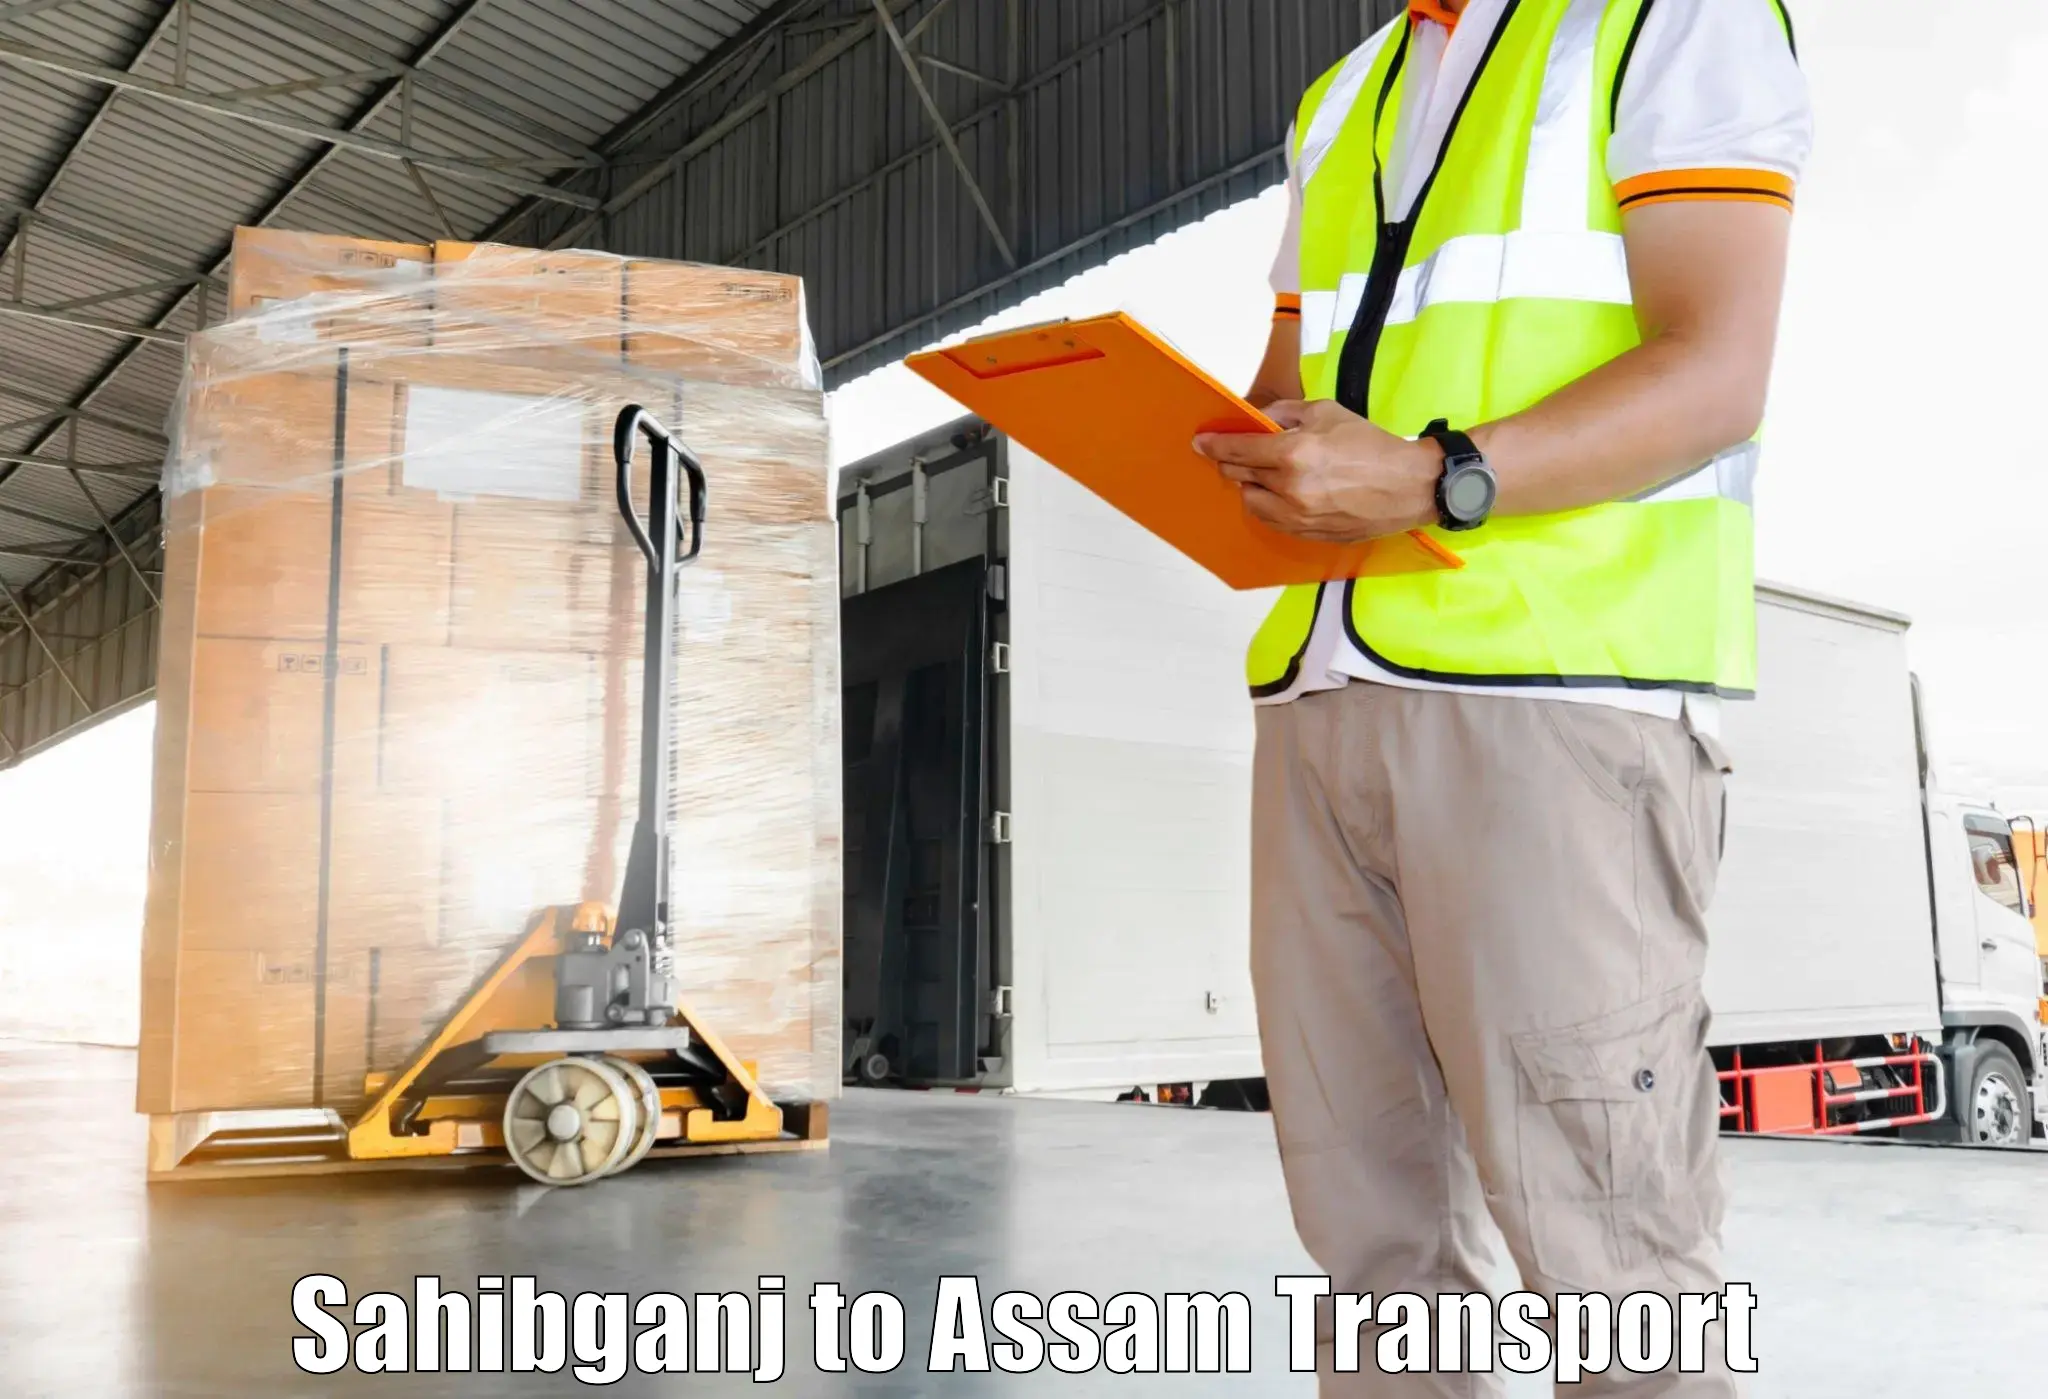 Daily transport service Sahibganj to Baksha Bodoland